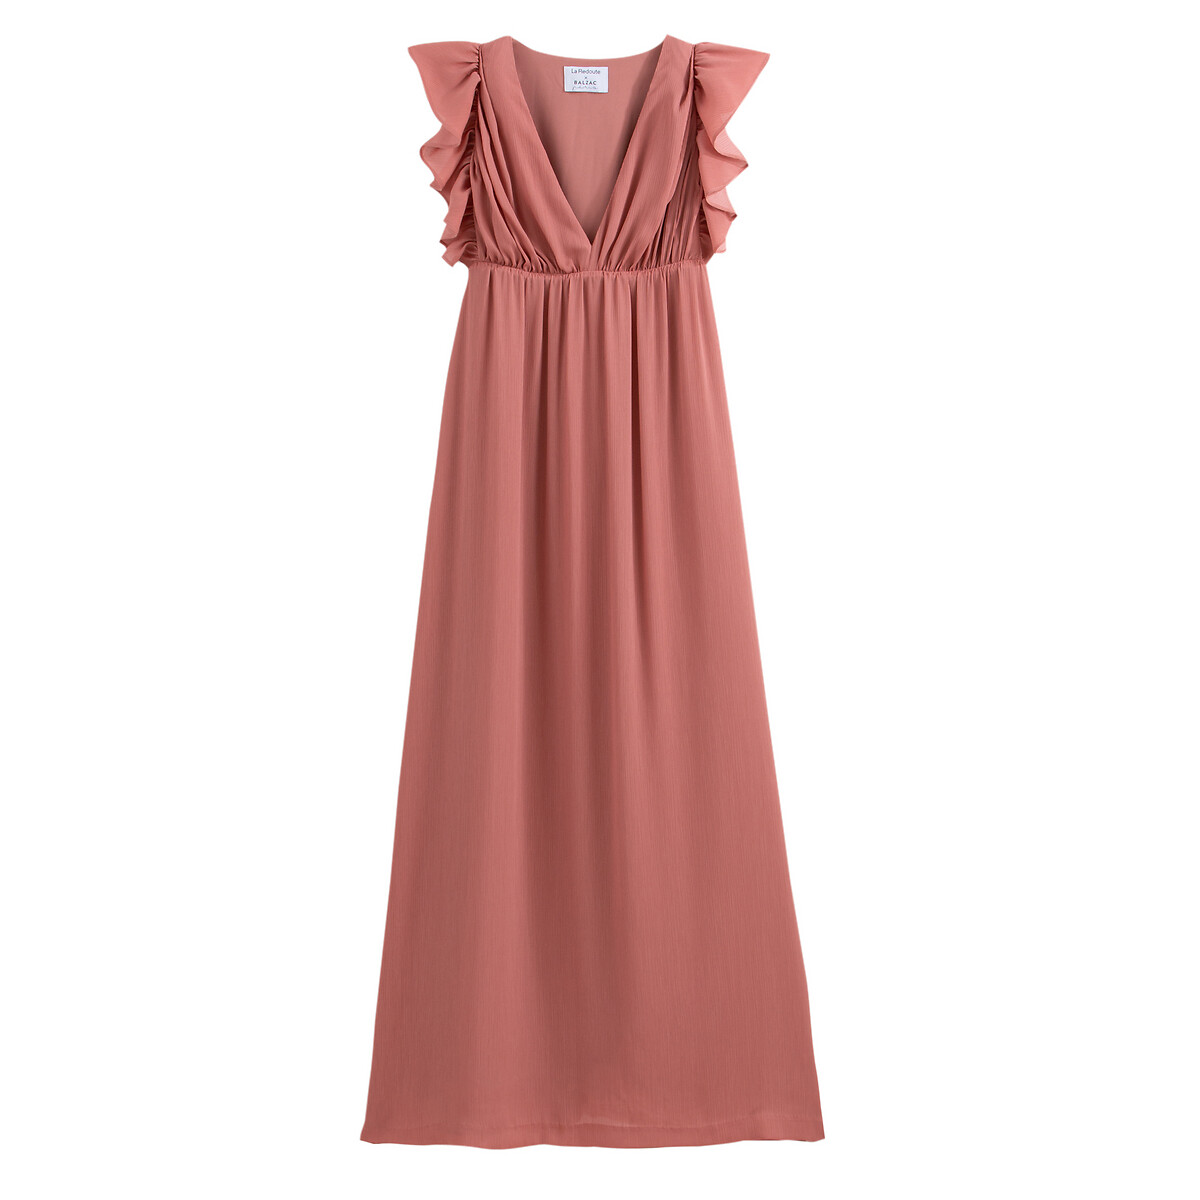 Платье La Redoute Длинное без рукавов 40 (FR) - 46 (RUS) розовый, размер 40 (FR) - 46 (RUS) Длинное без рукавов 40 (FR) - 46 (RUS) розовый - фото 1